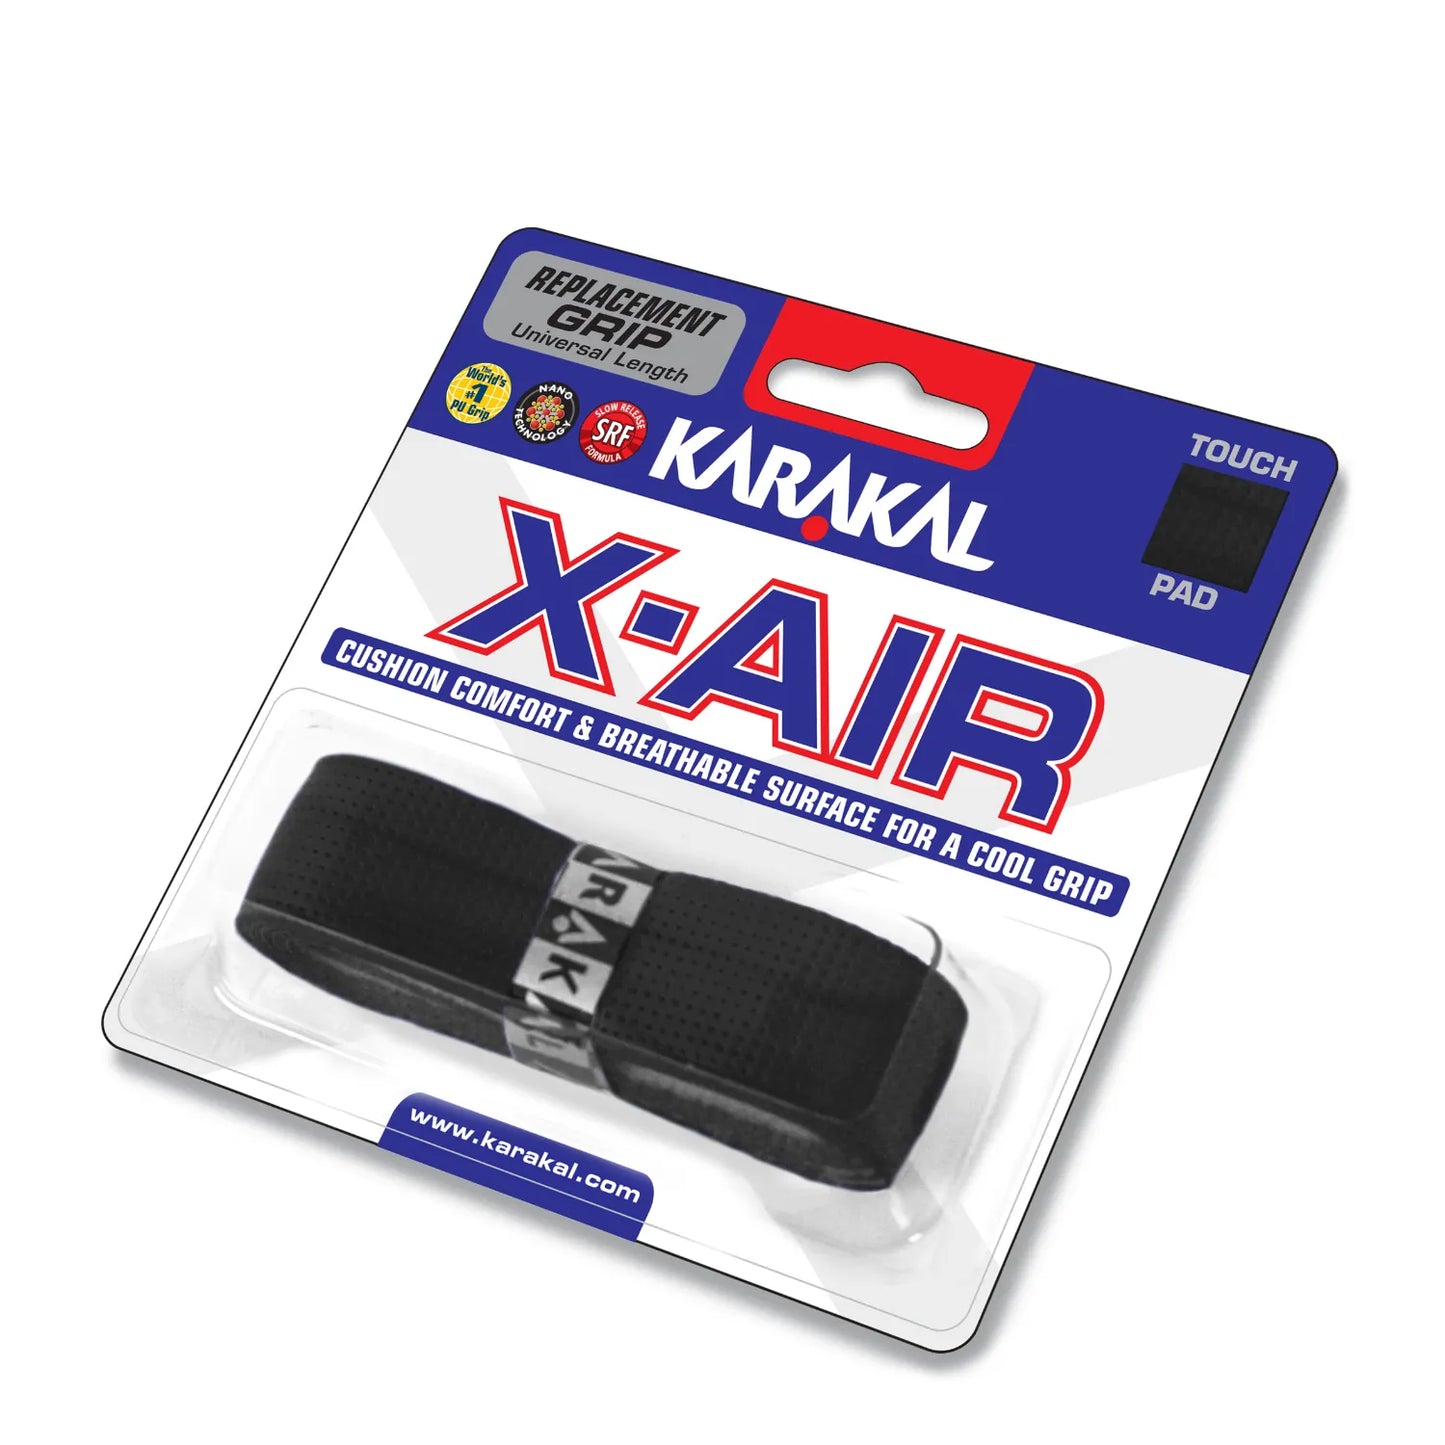 Karakal X-AIR Grip